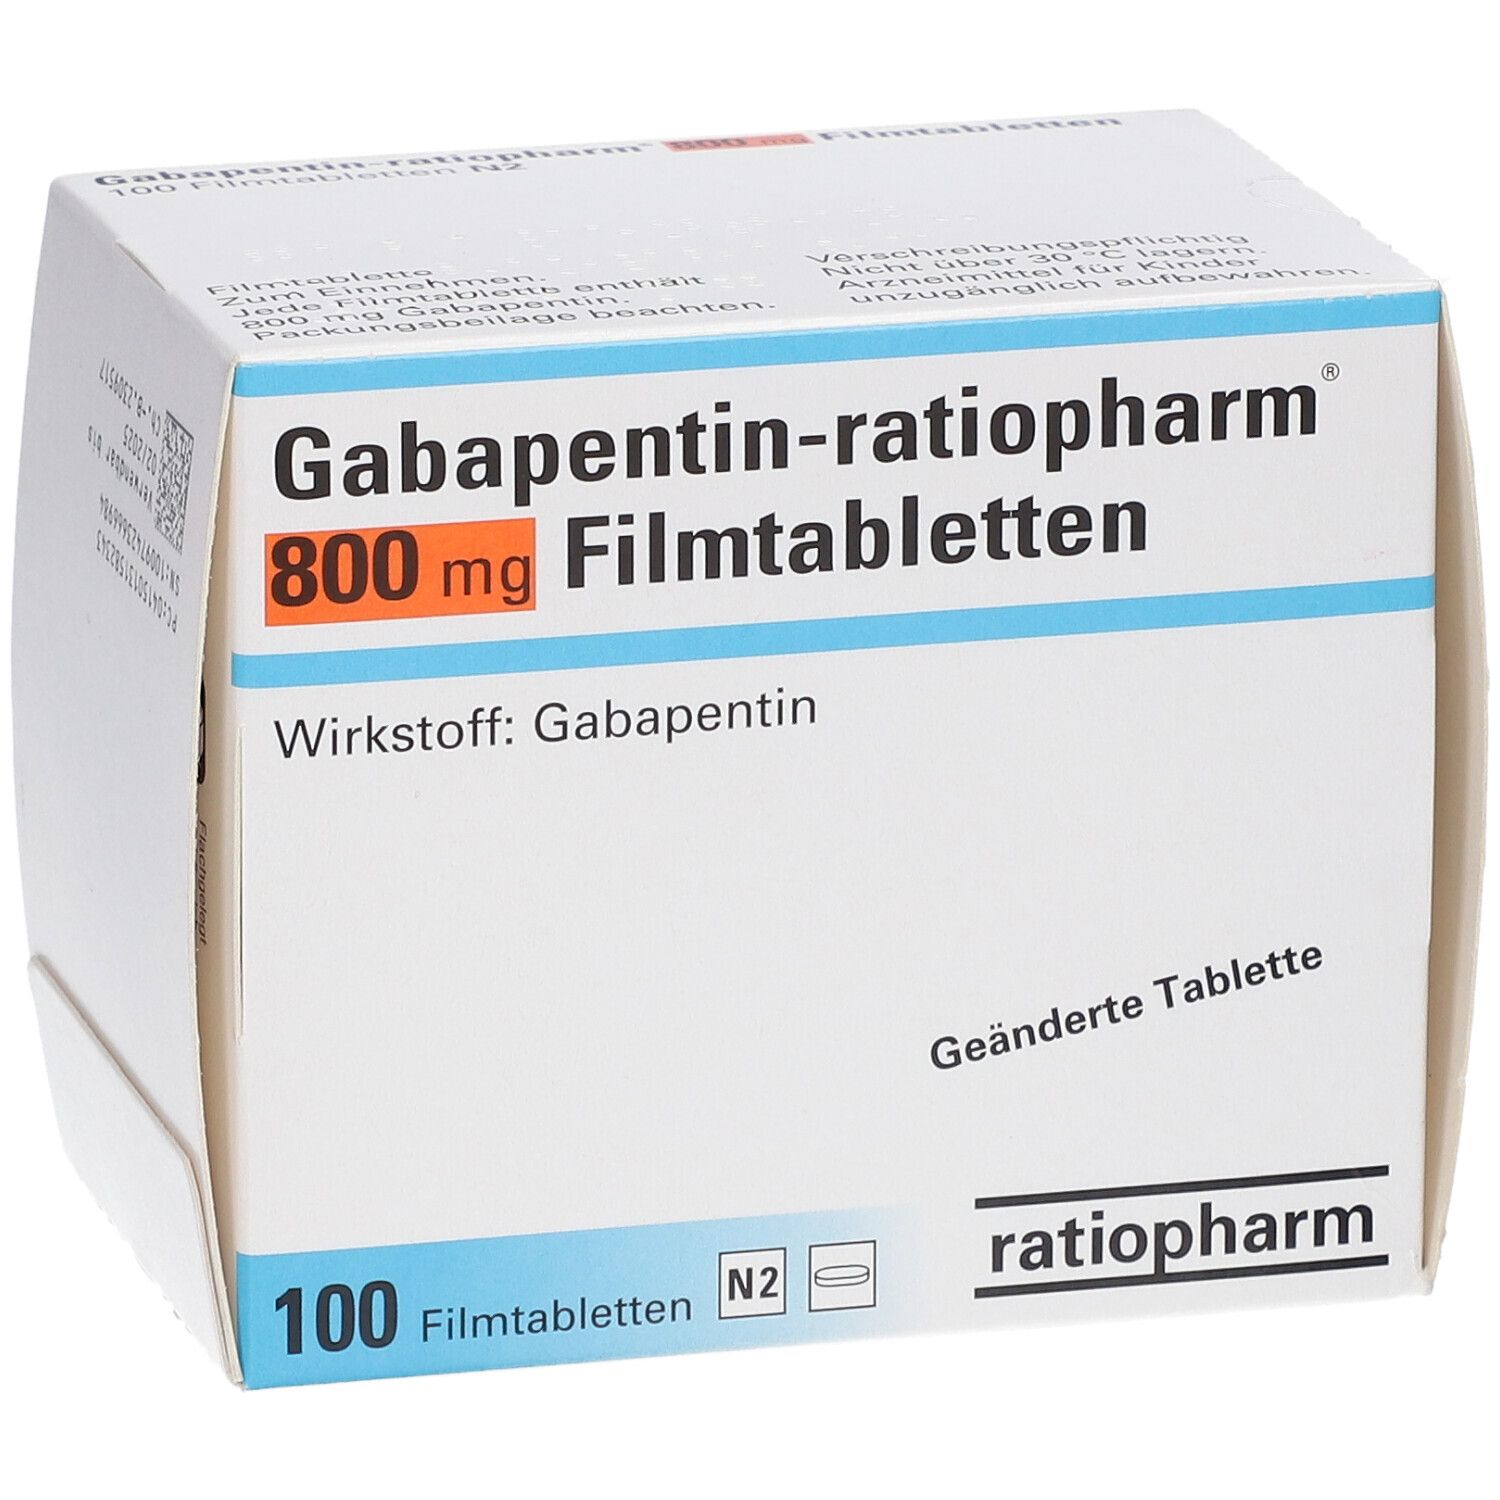 Gabapentin-ratiopharm® 800 mg